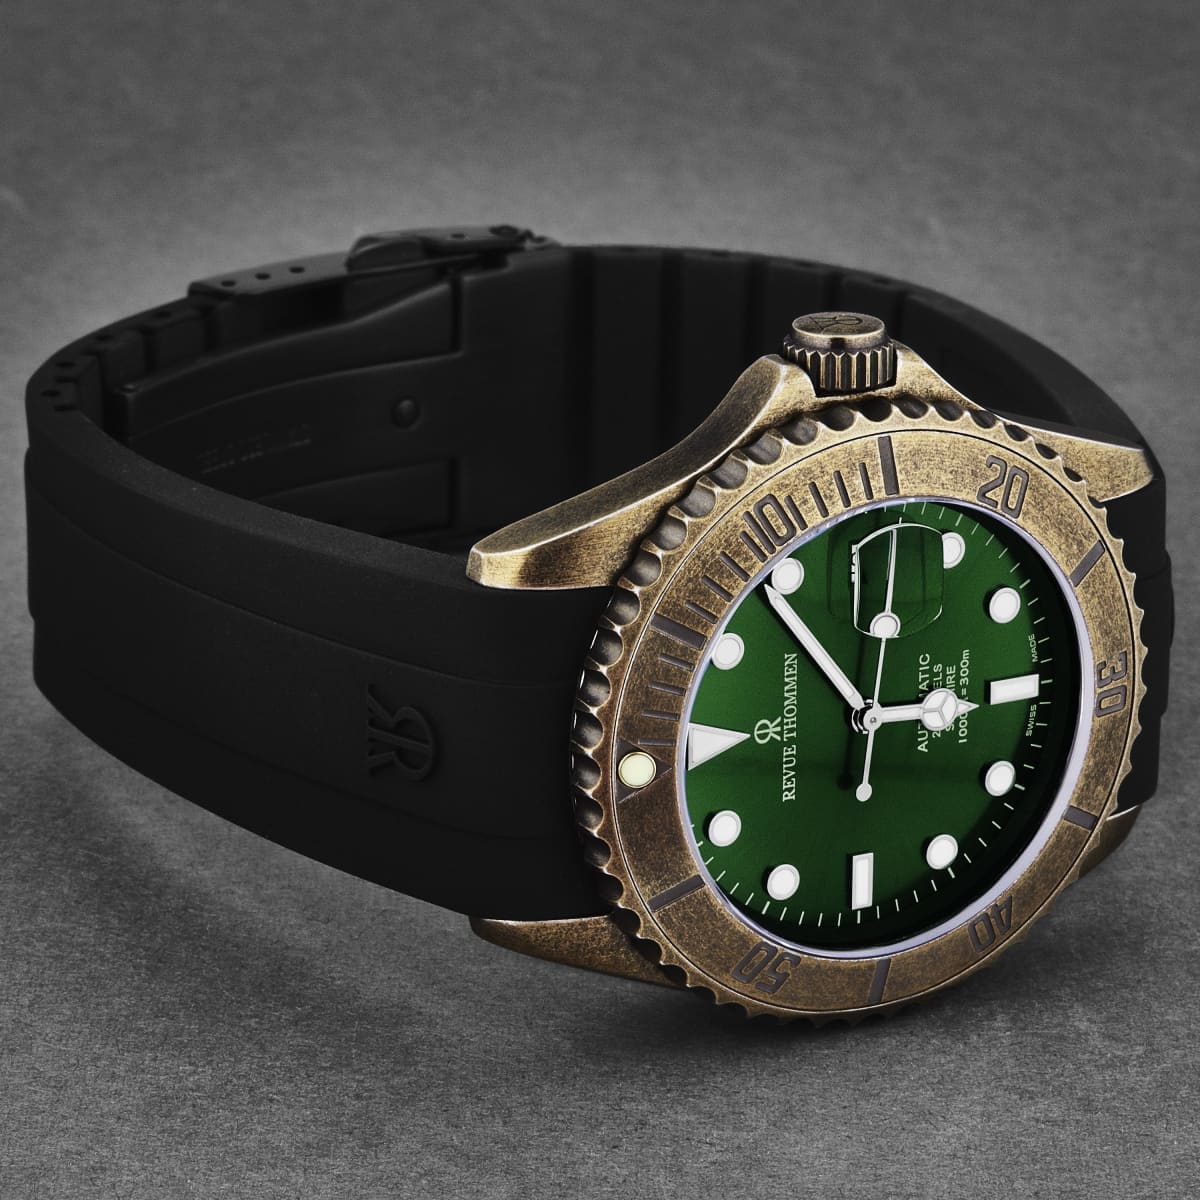 Revue Thommen Men’s ’Diver’ Green Dial Black Rubber Gunmetal Automatic Watch 17571.2884 - On sale